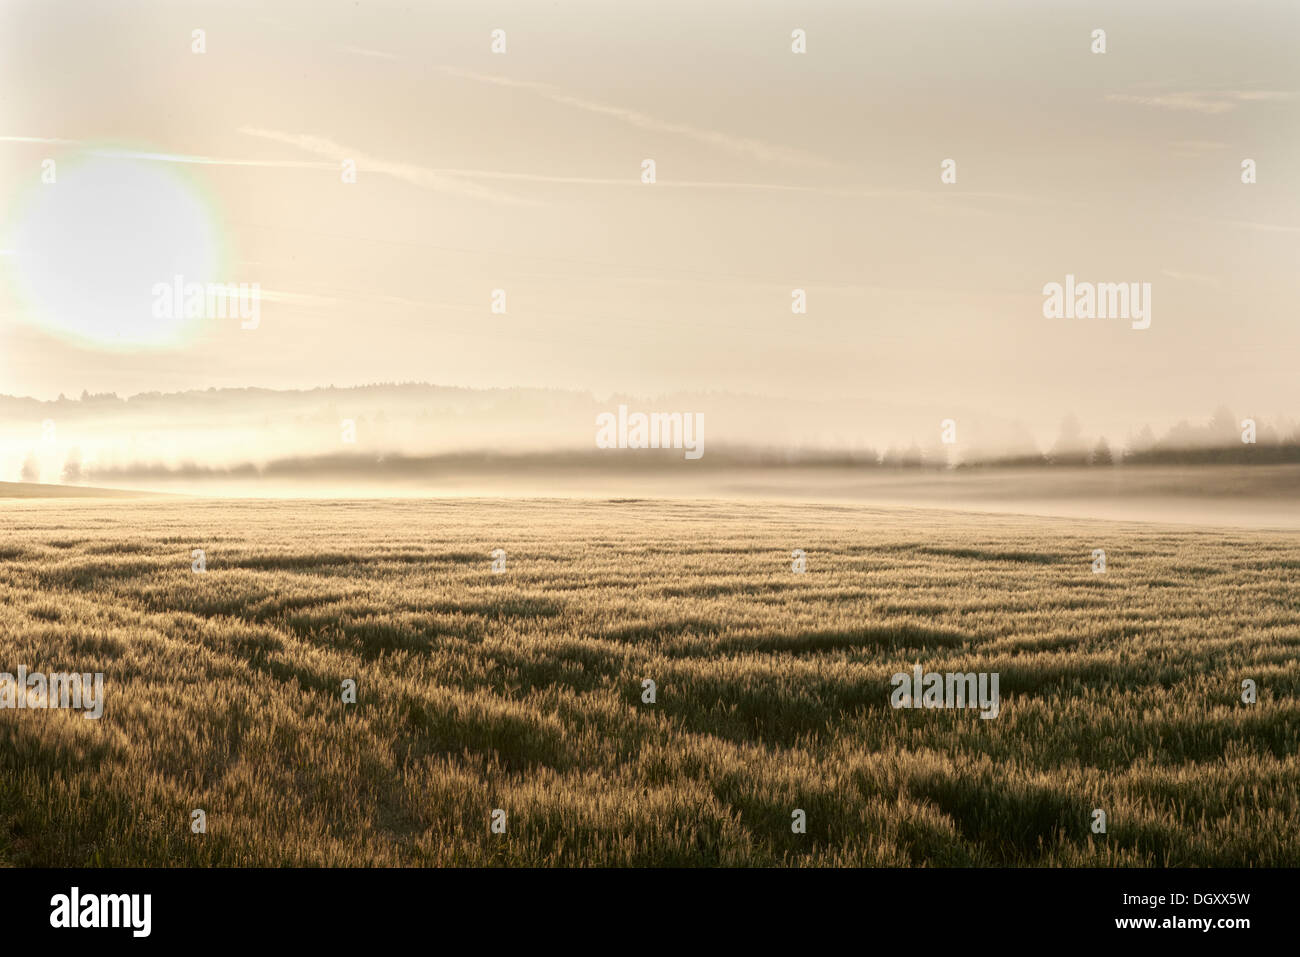 Wheat field in the morning, backlit with fog, Leutstetten, Starnberg, Upper Bavaria, Bavaria, Germany Stock Photo